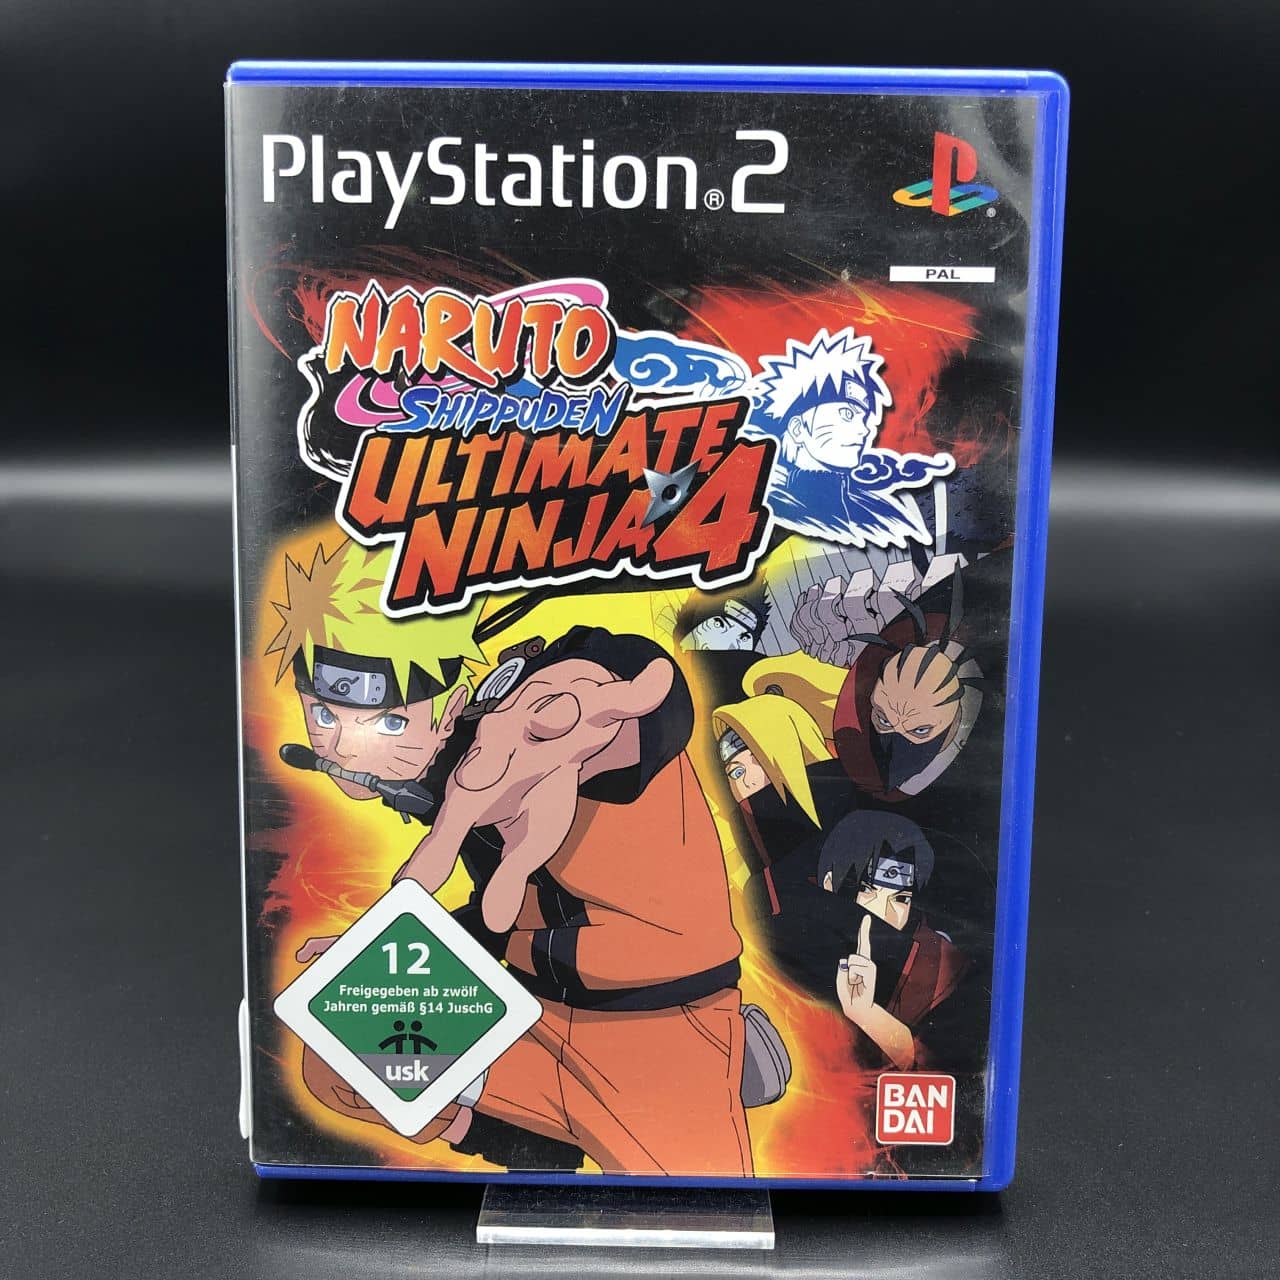 PS2 Ultimate Ninja 4 - Naruto Shippuden (Komplett) (Sehr gut) Sony PlayStation 2